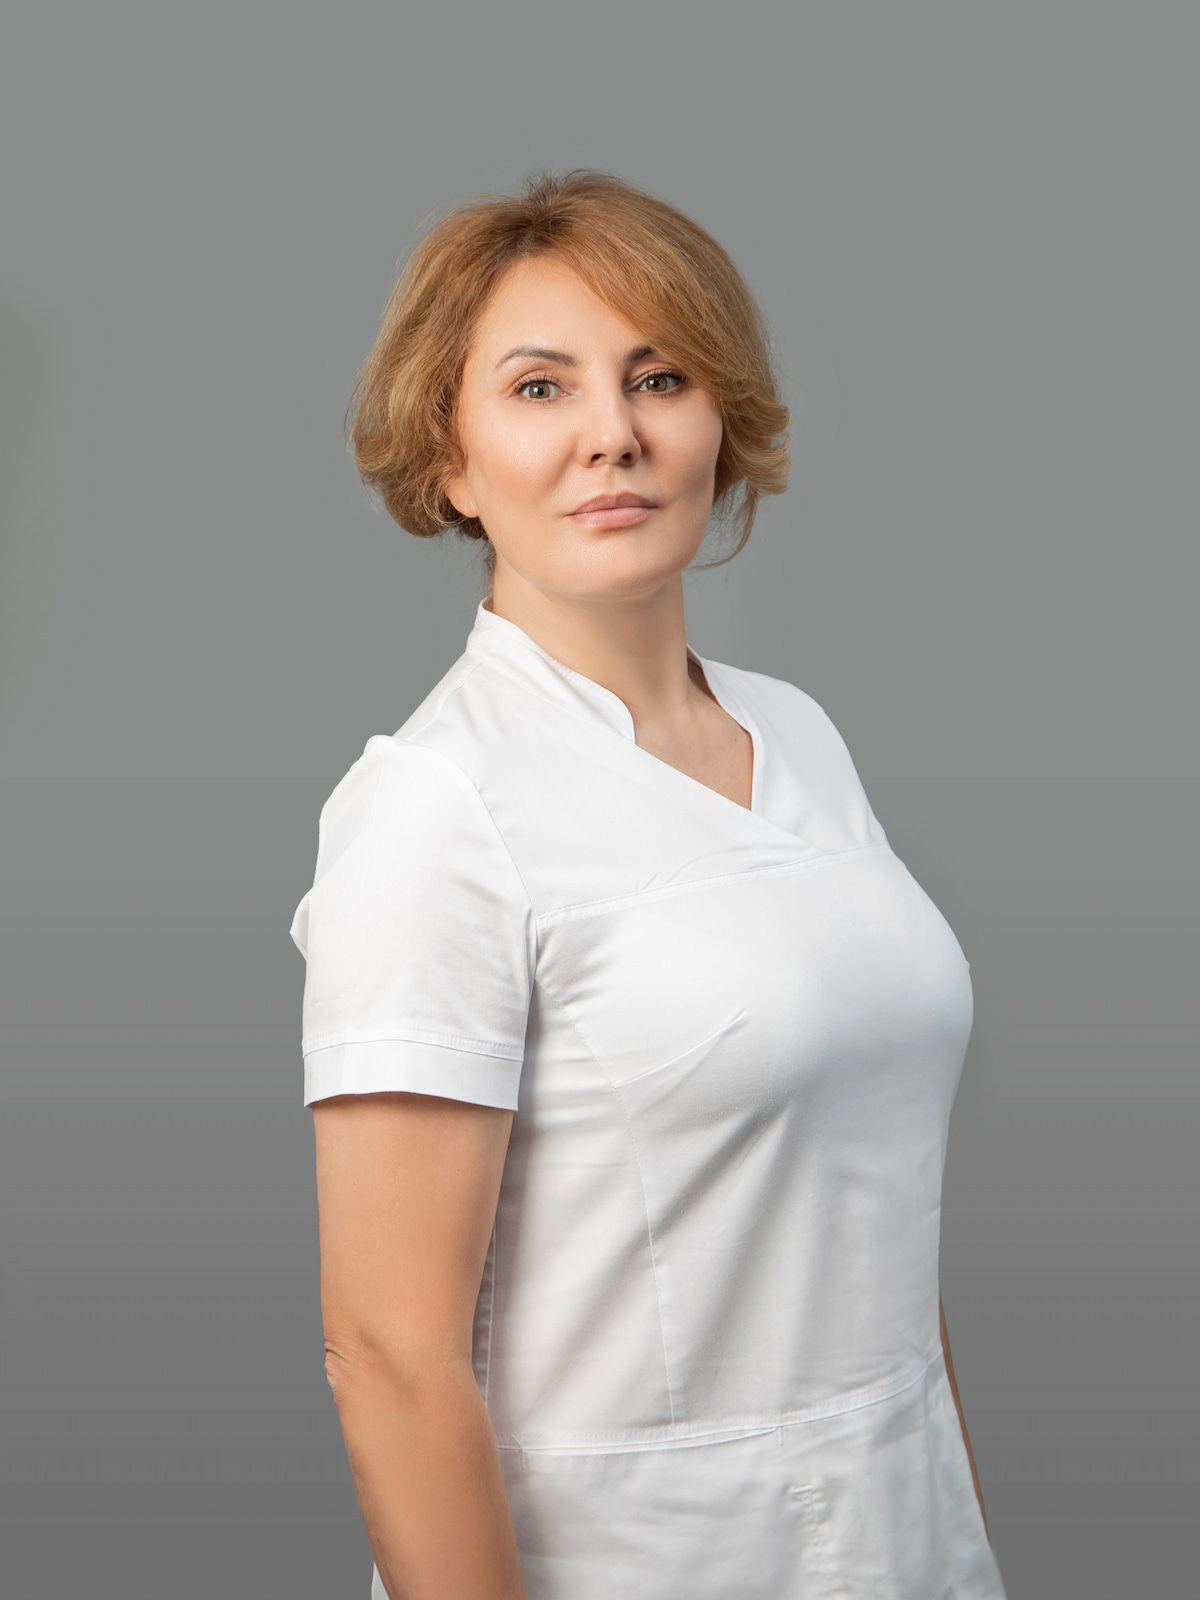 Гордзилевская Светлана Александровна